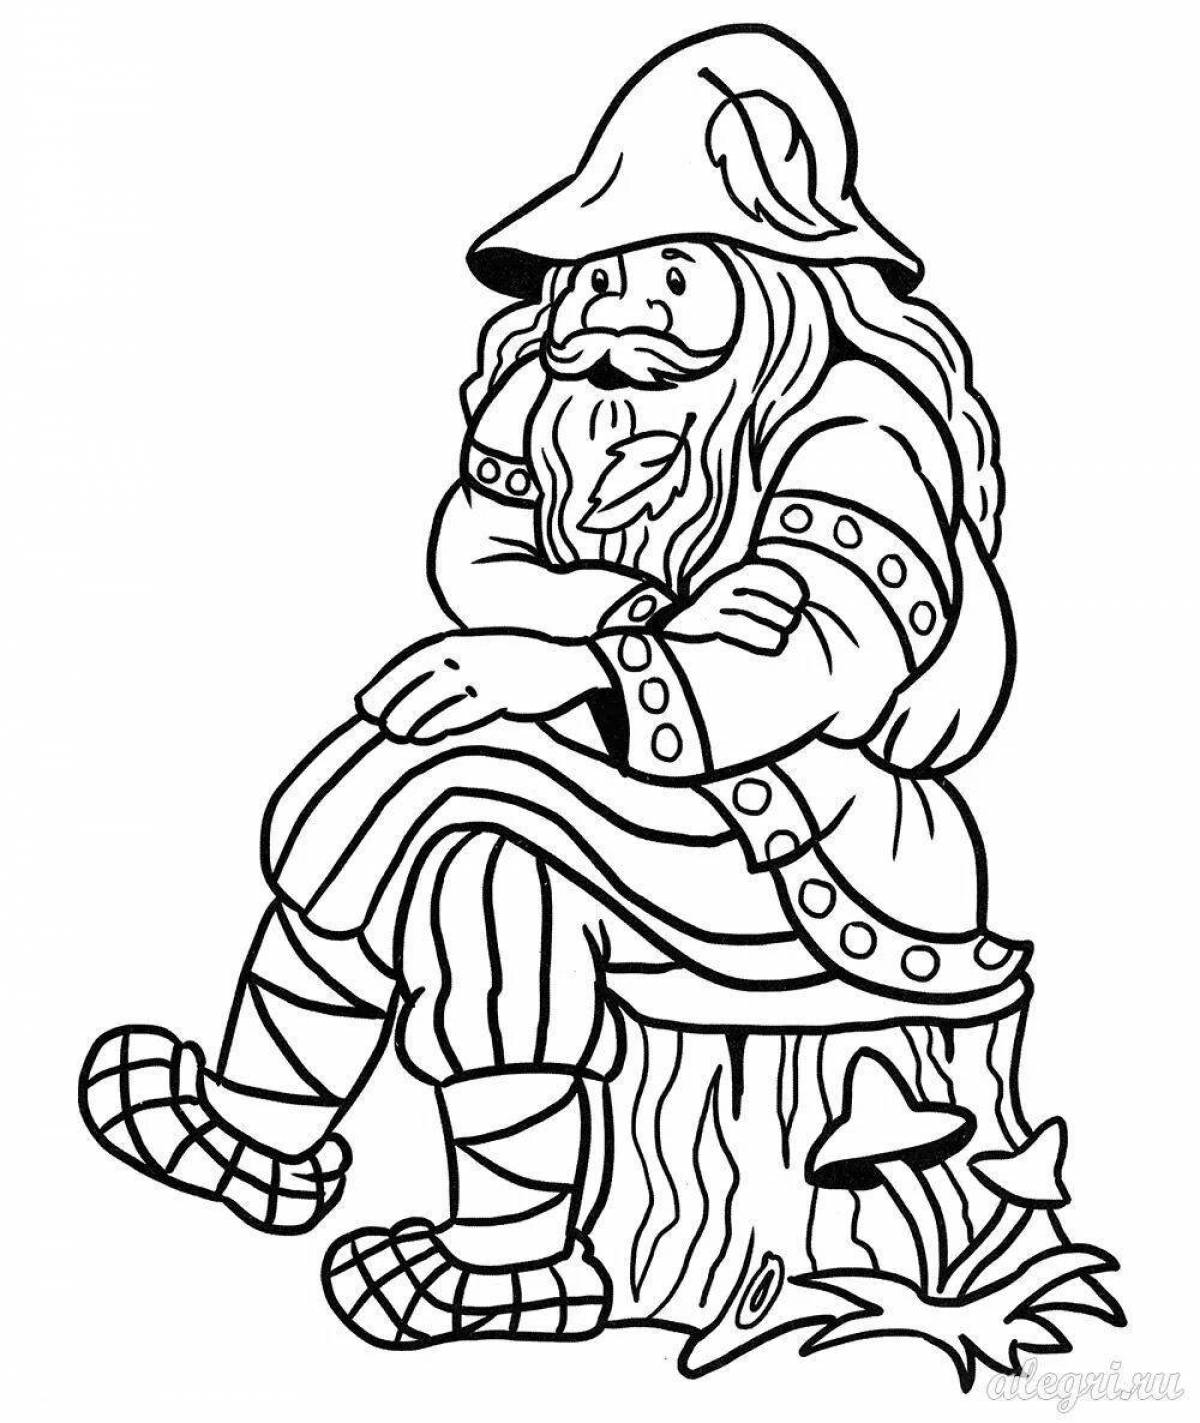 Heroic coloring old woodman